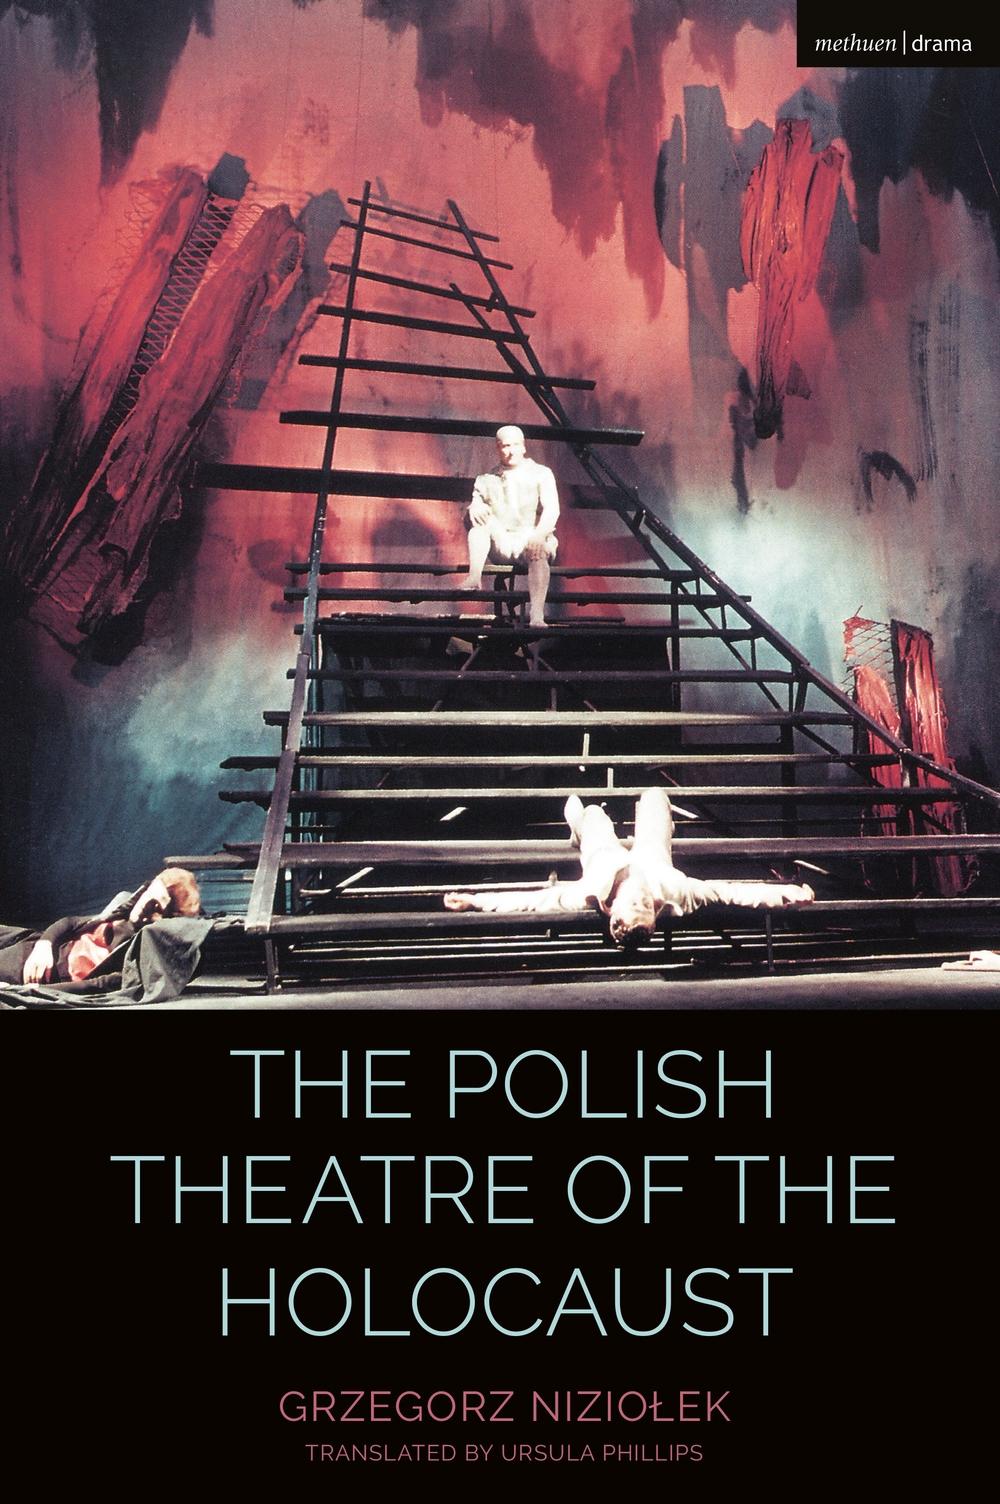 Polish Theatre of the Holocaust - Grzegorz Niziolek